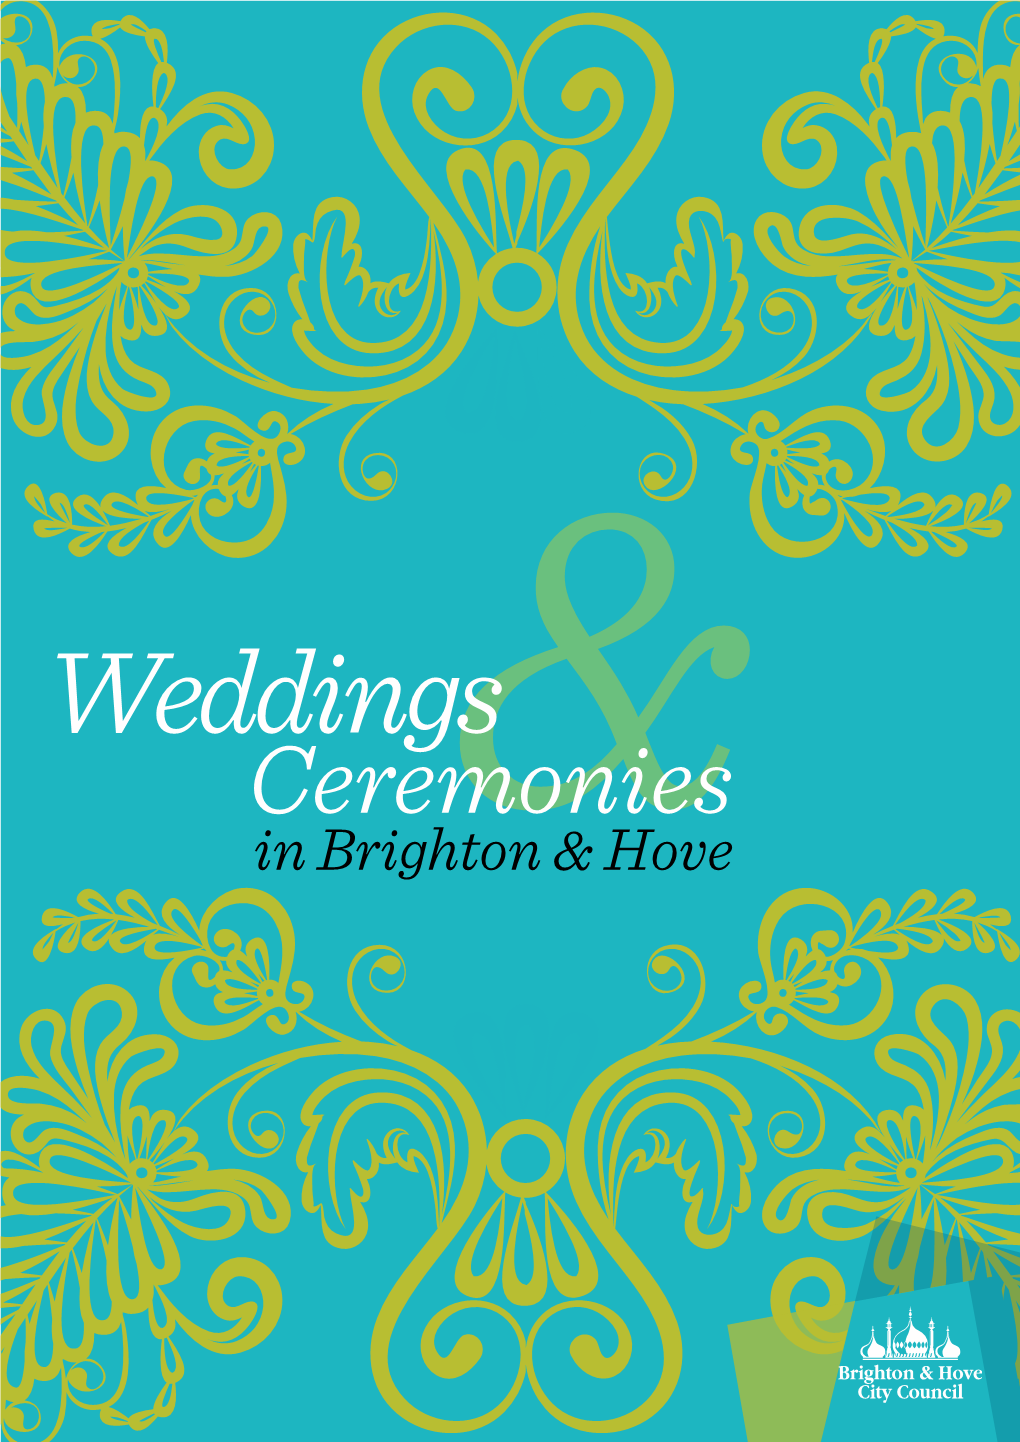 Ceremonies in Brighton & Hove 04 the Brighton & Hove 12 Ceremonies Guide